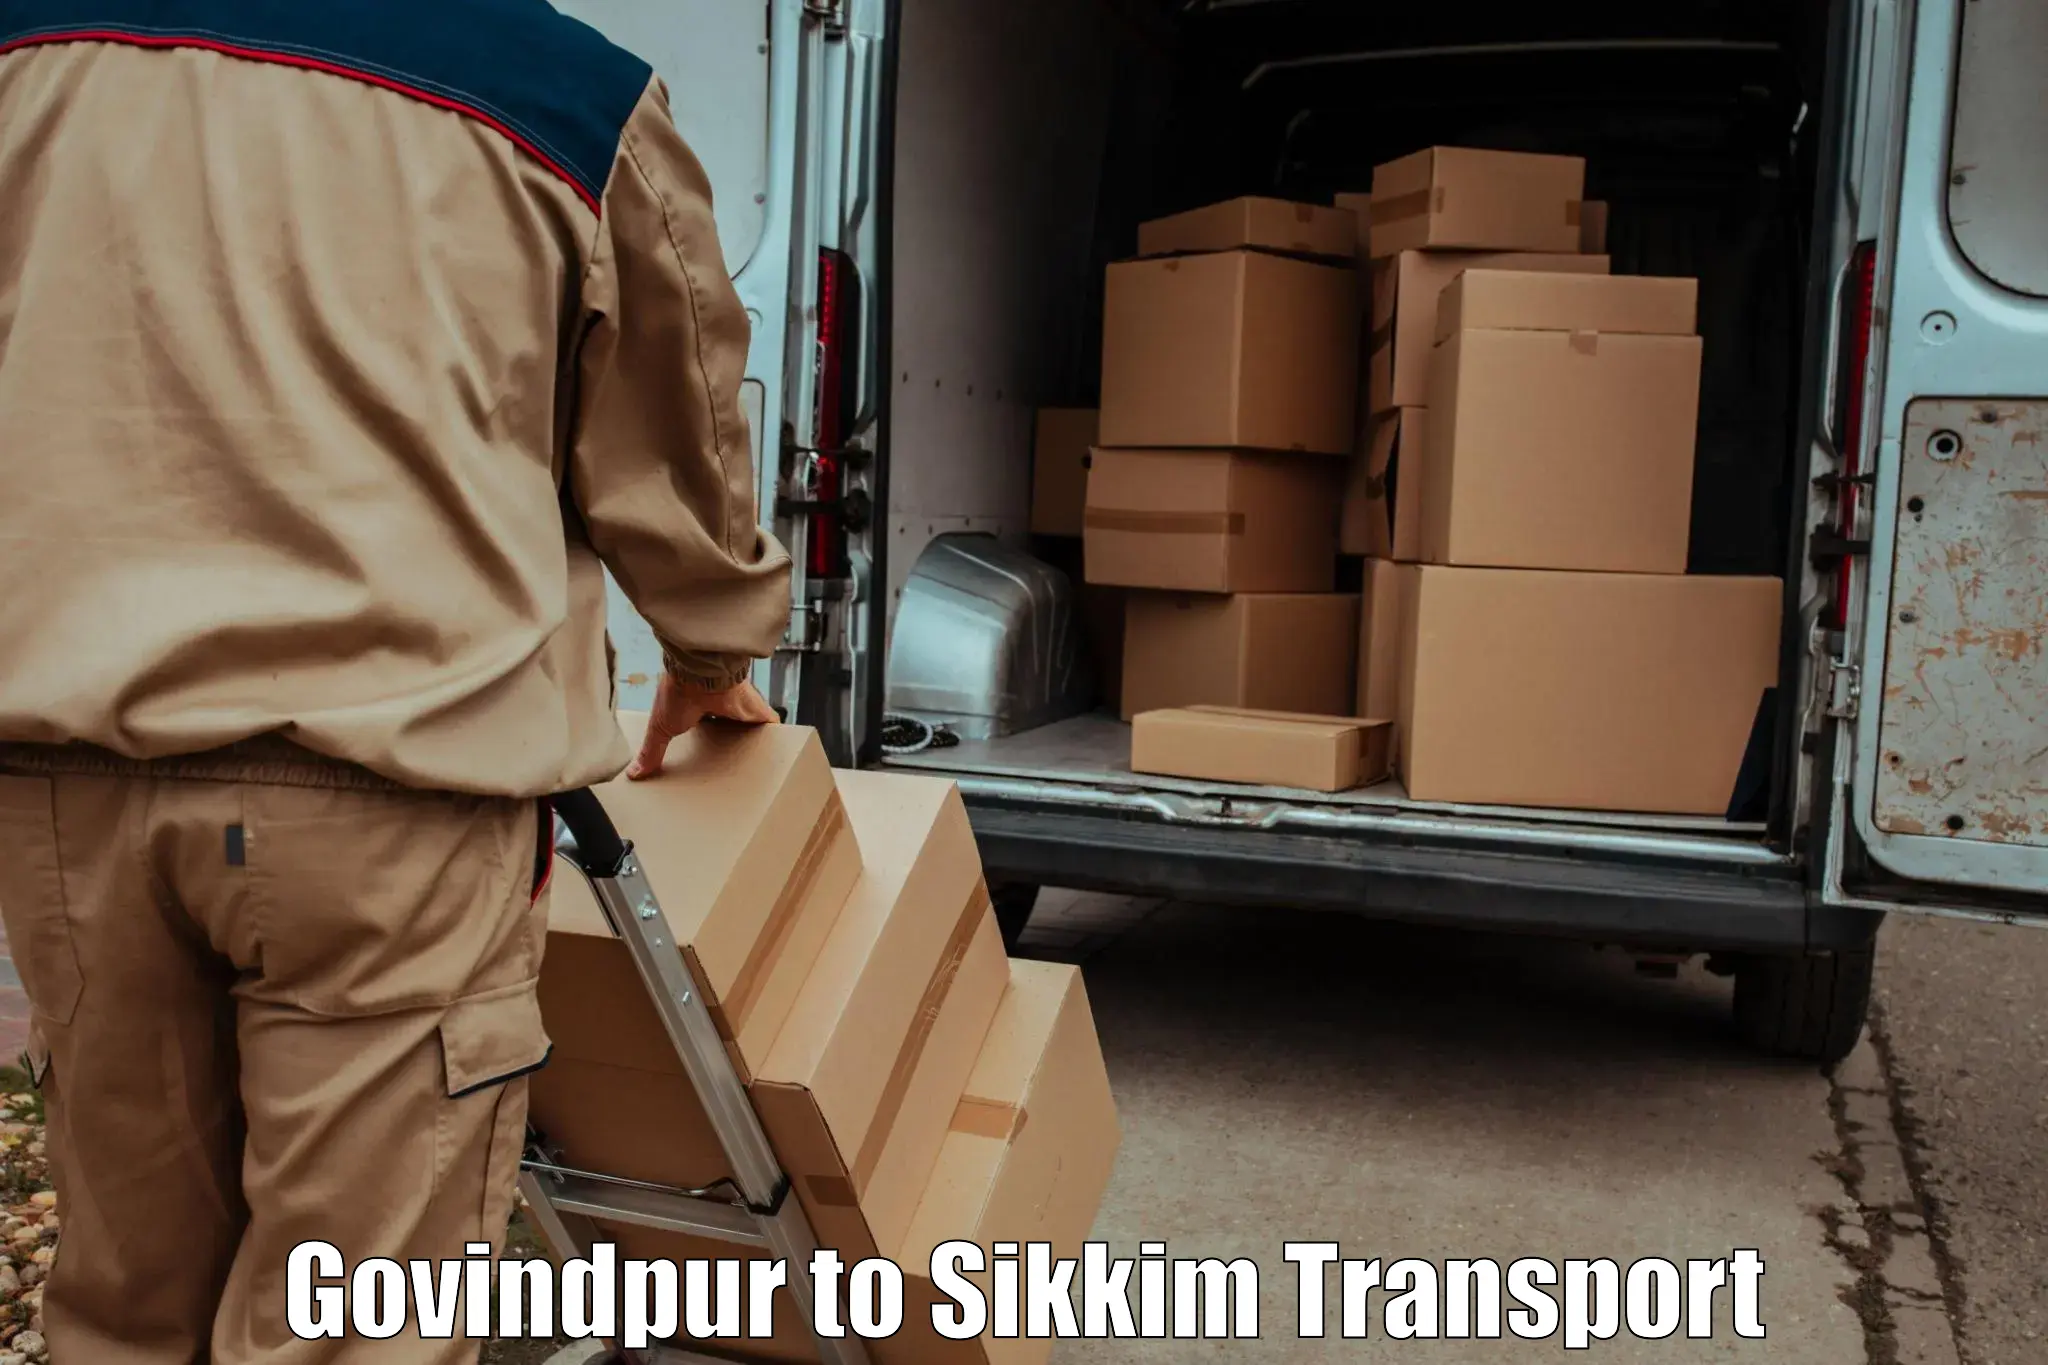 Online transport service Govindpur to East Sikkim